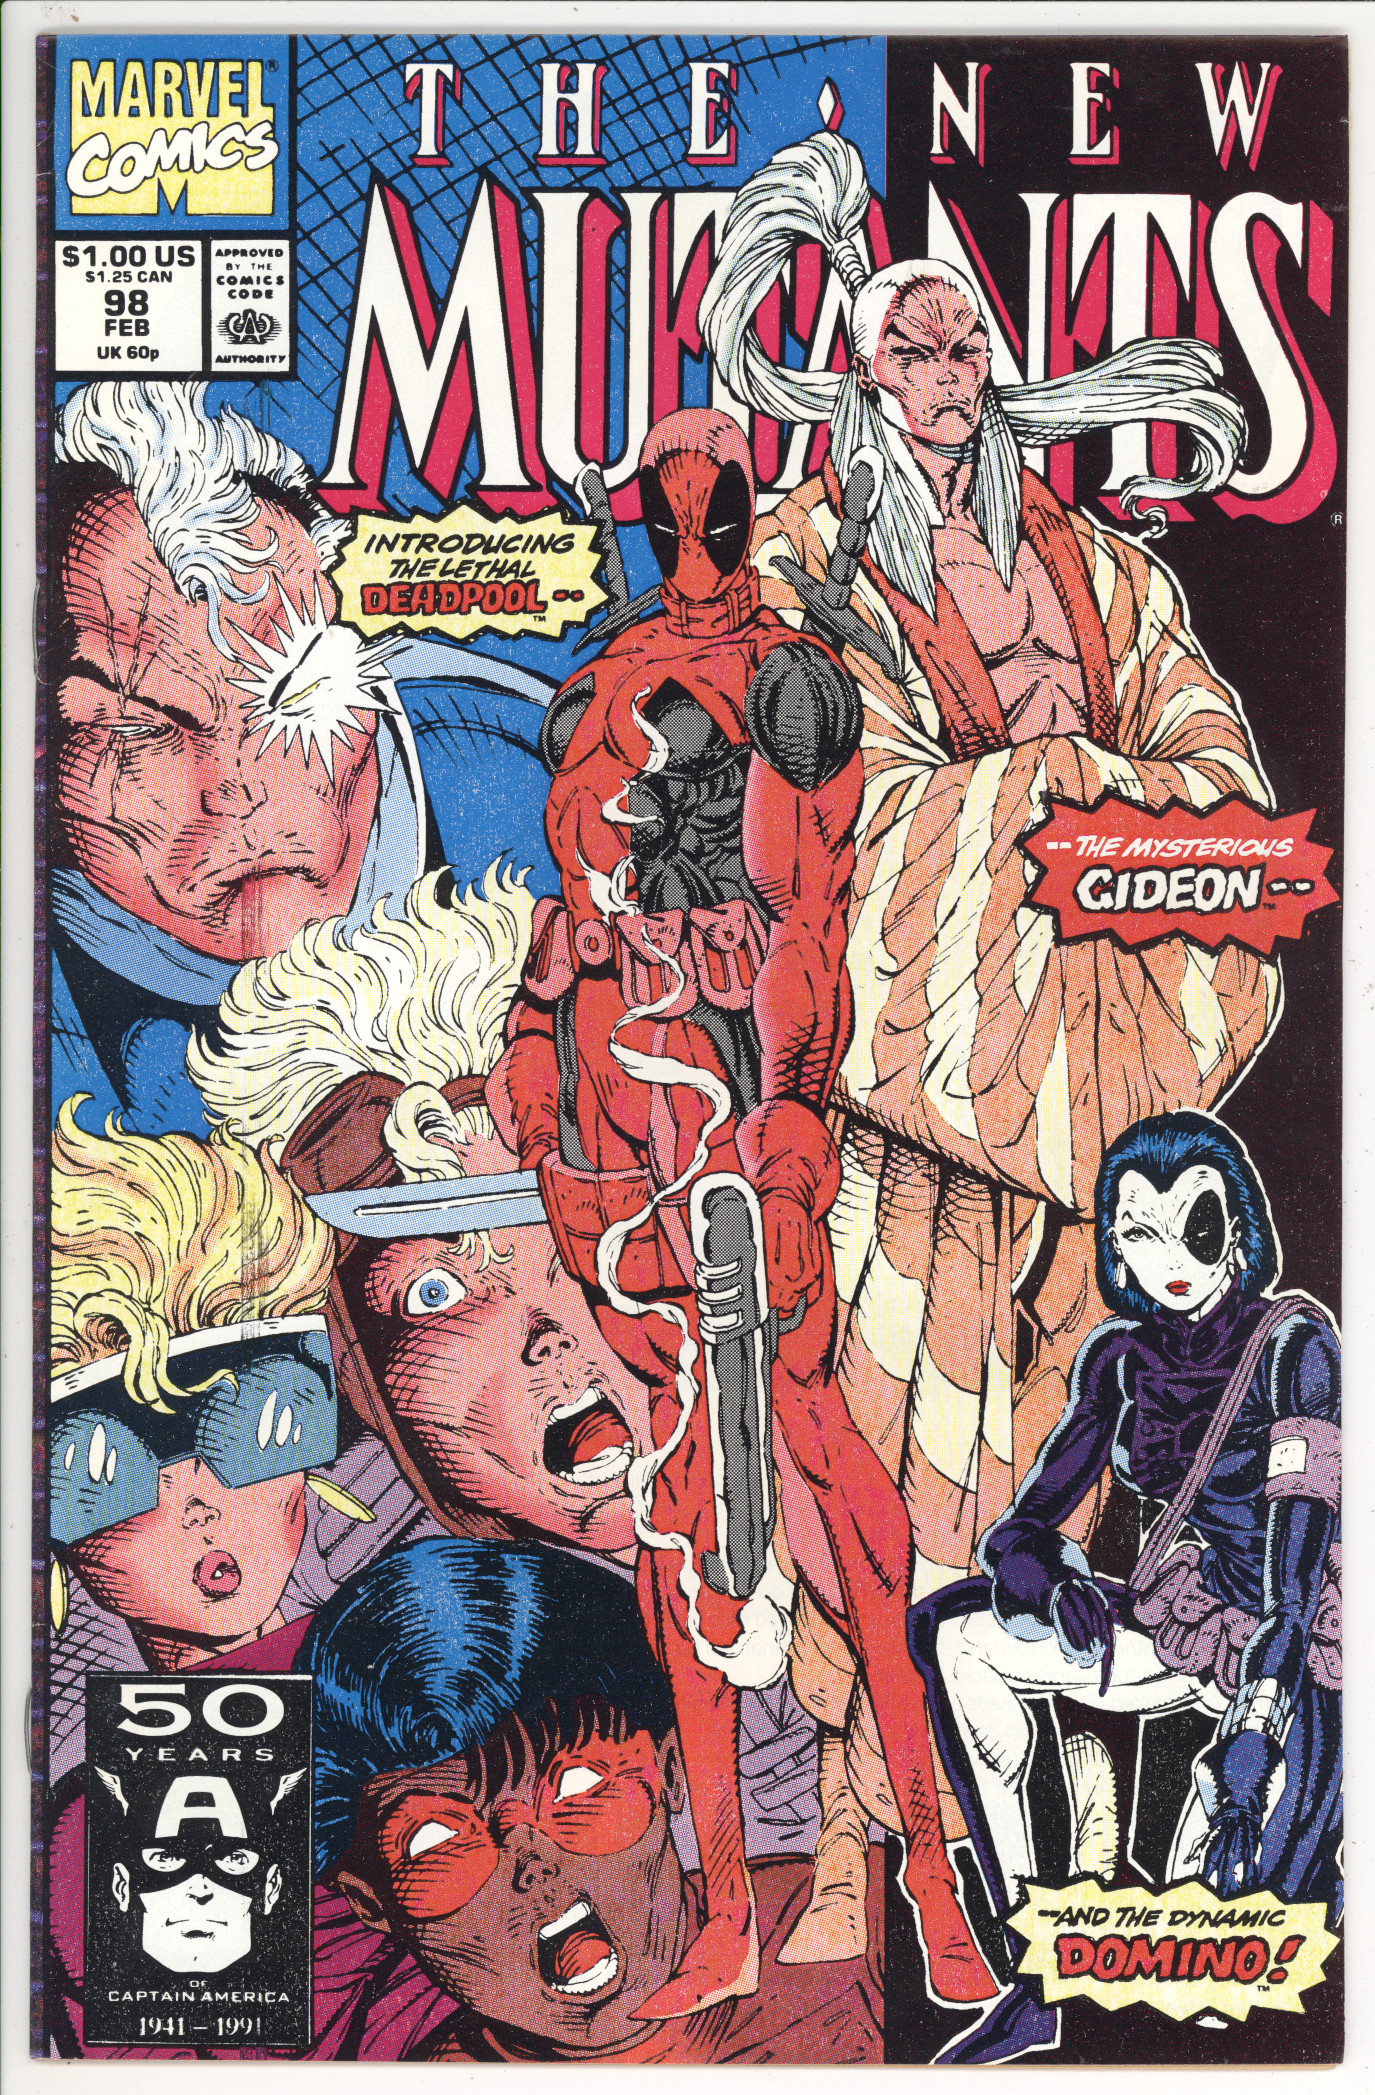 New Mutants  #98